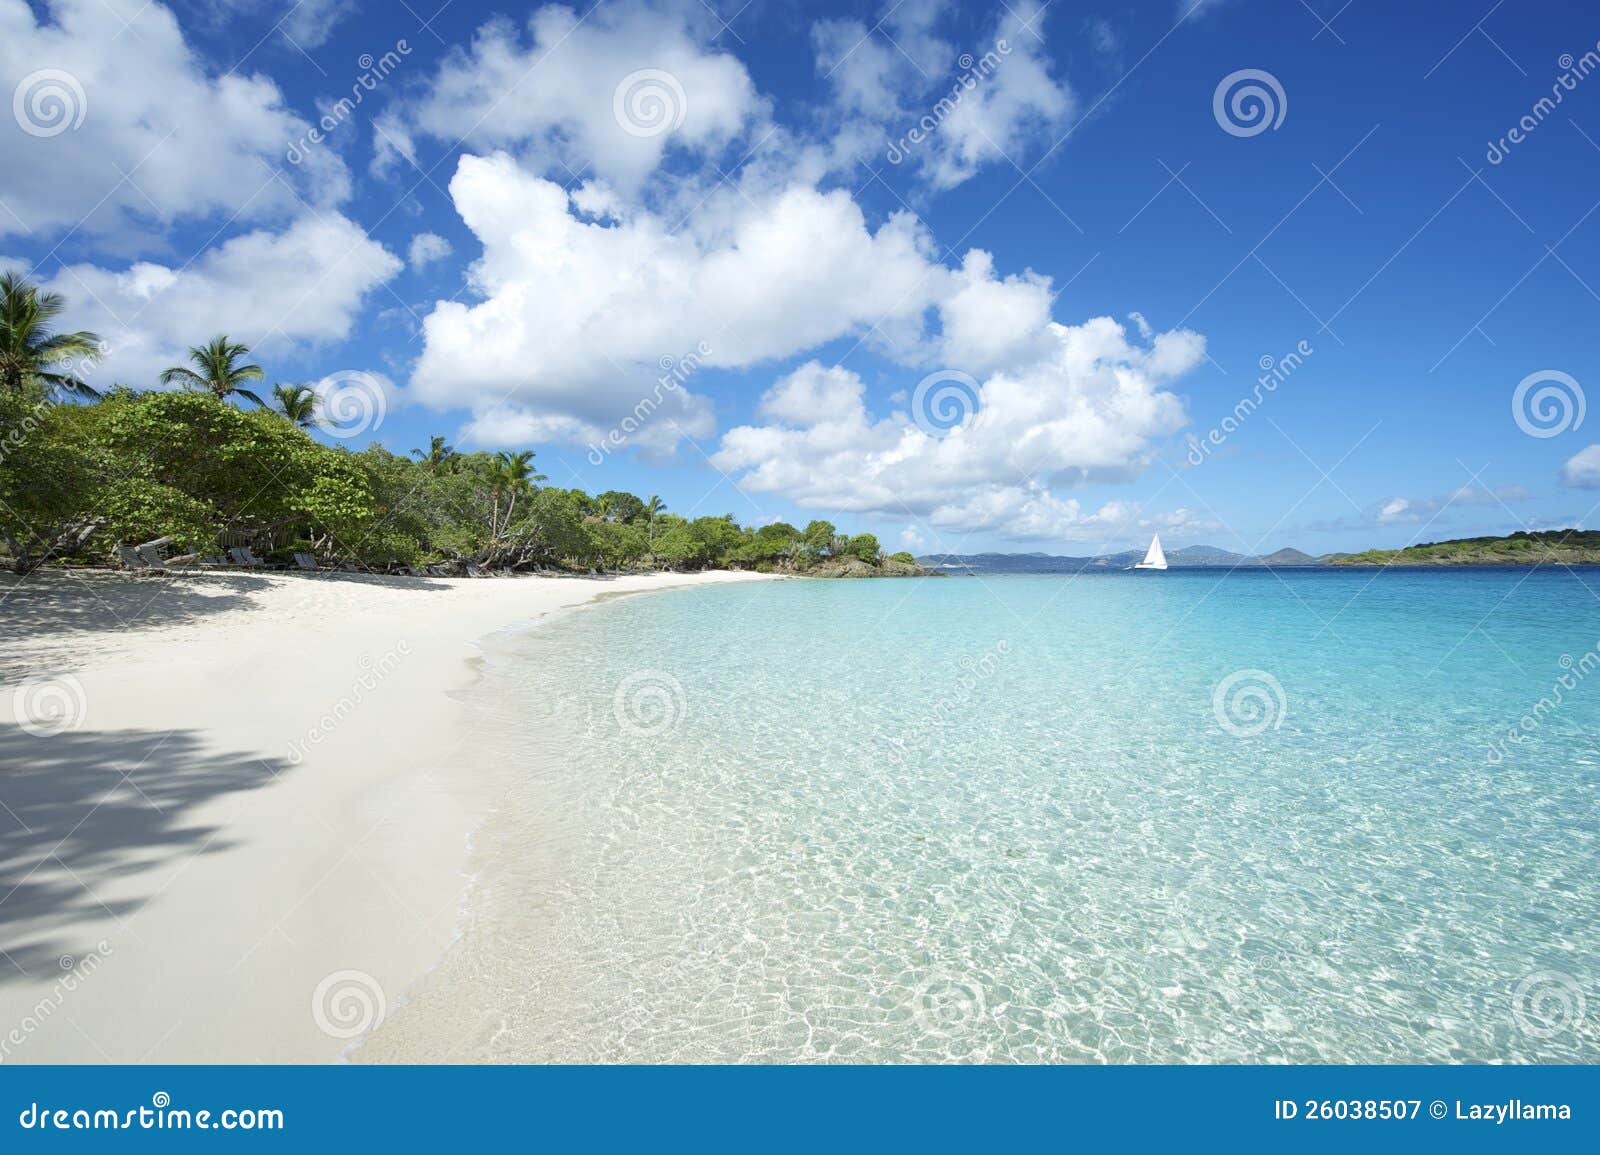 paradise caribbean beach virgin islands horizontal